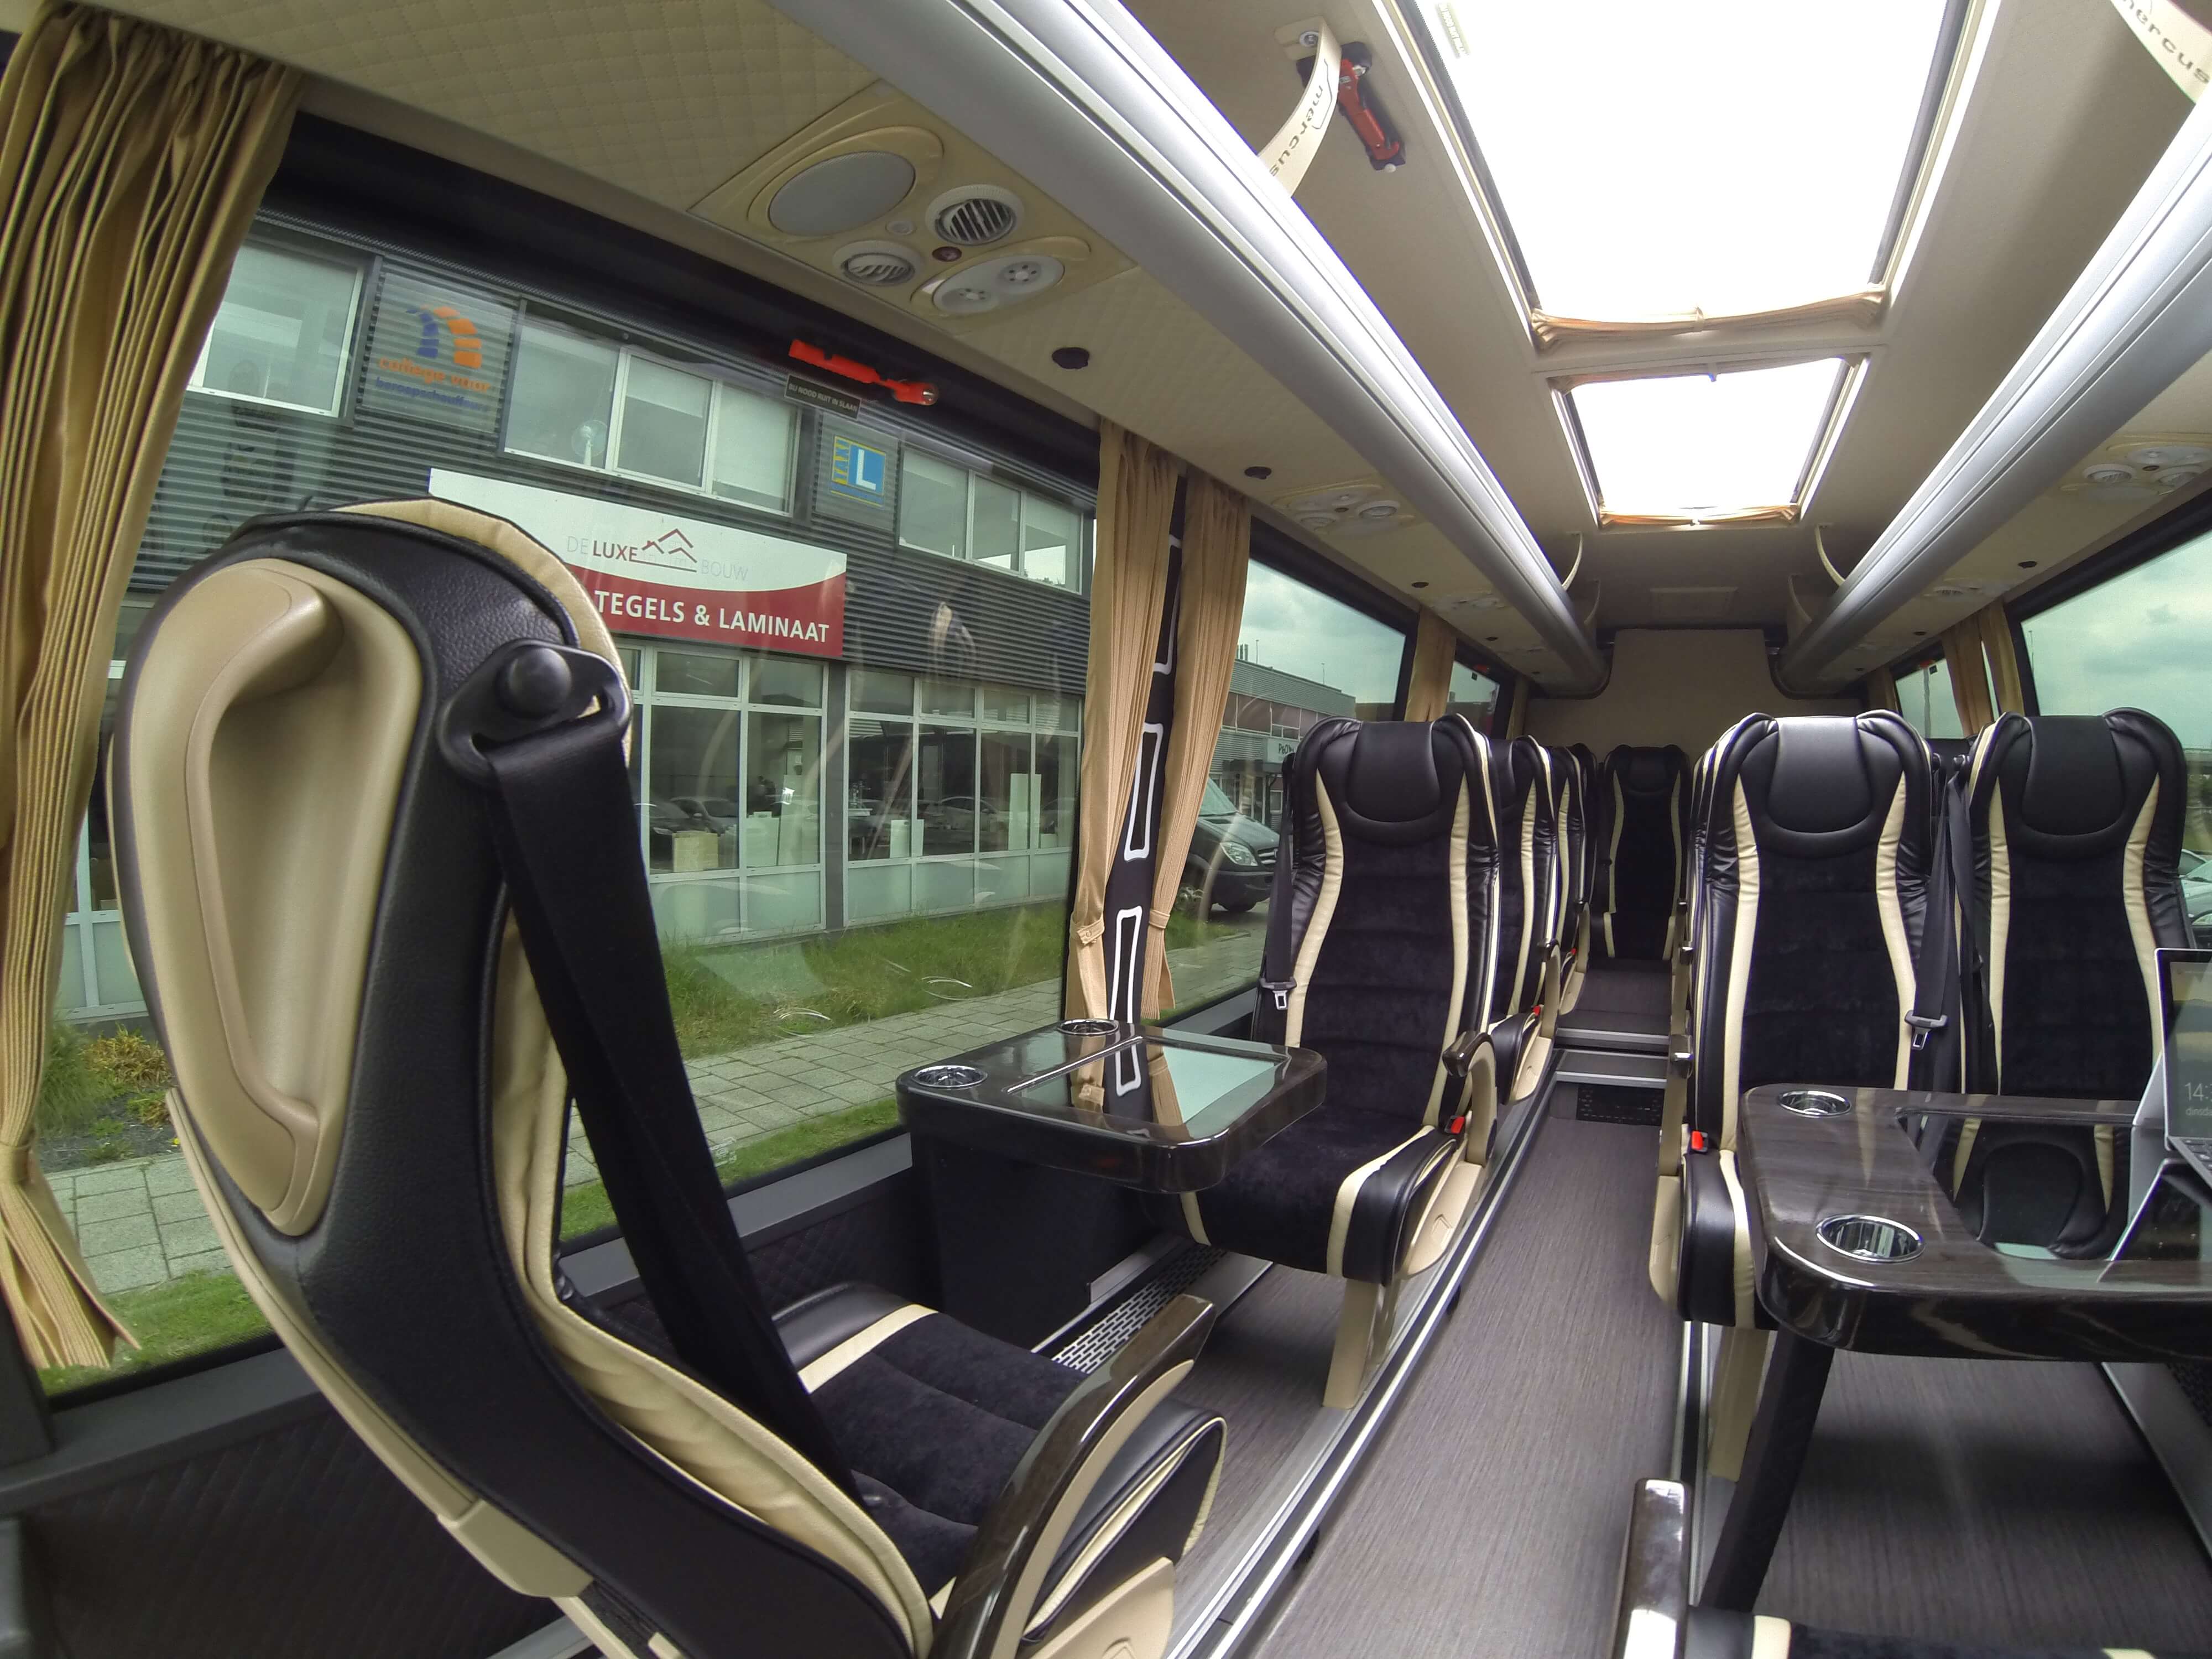 Huur een Minibus  (Mercedes  Sprinter 2018) met 16 stoelen van Direct Vip Service uit Amsterdam 